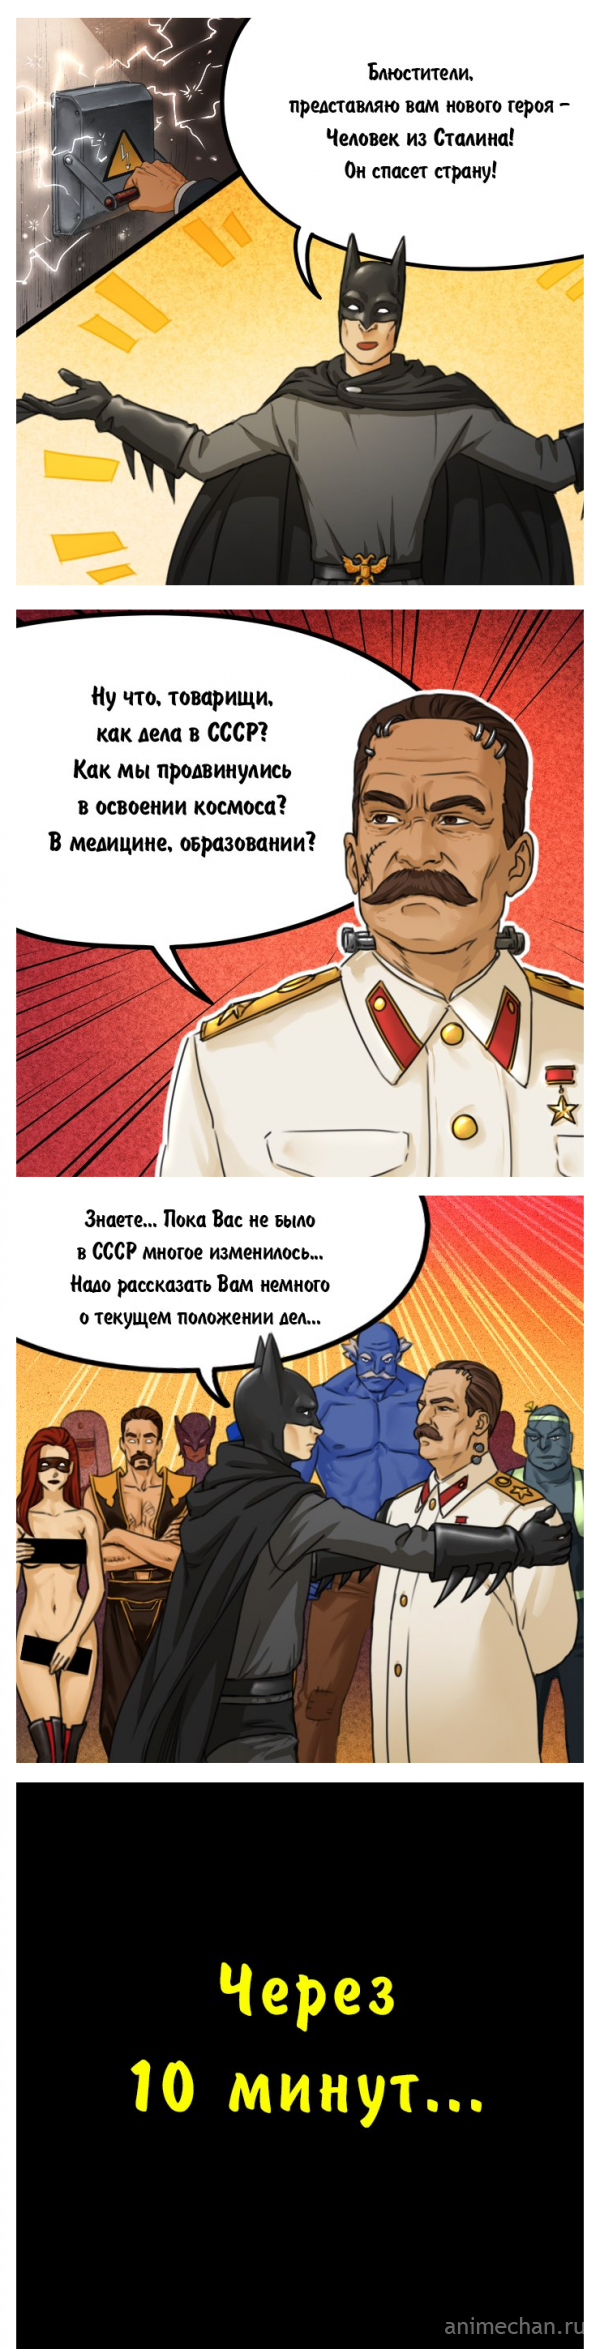 Суровый Сталин